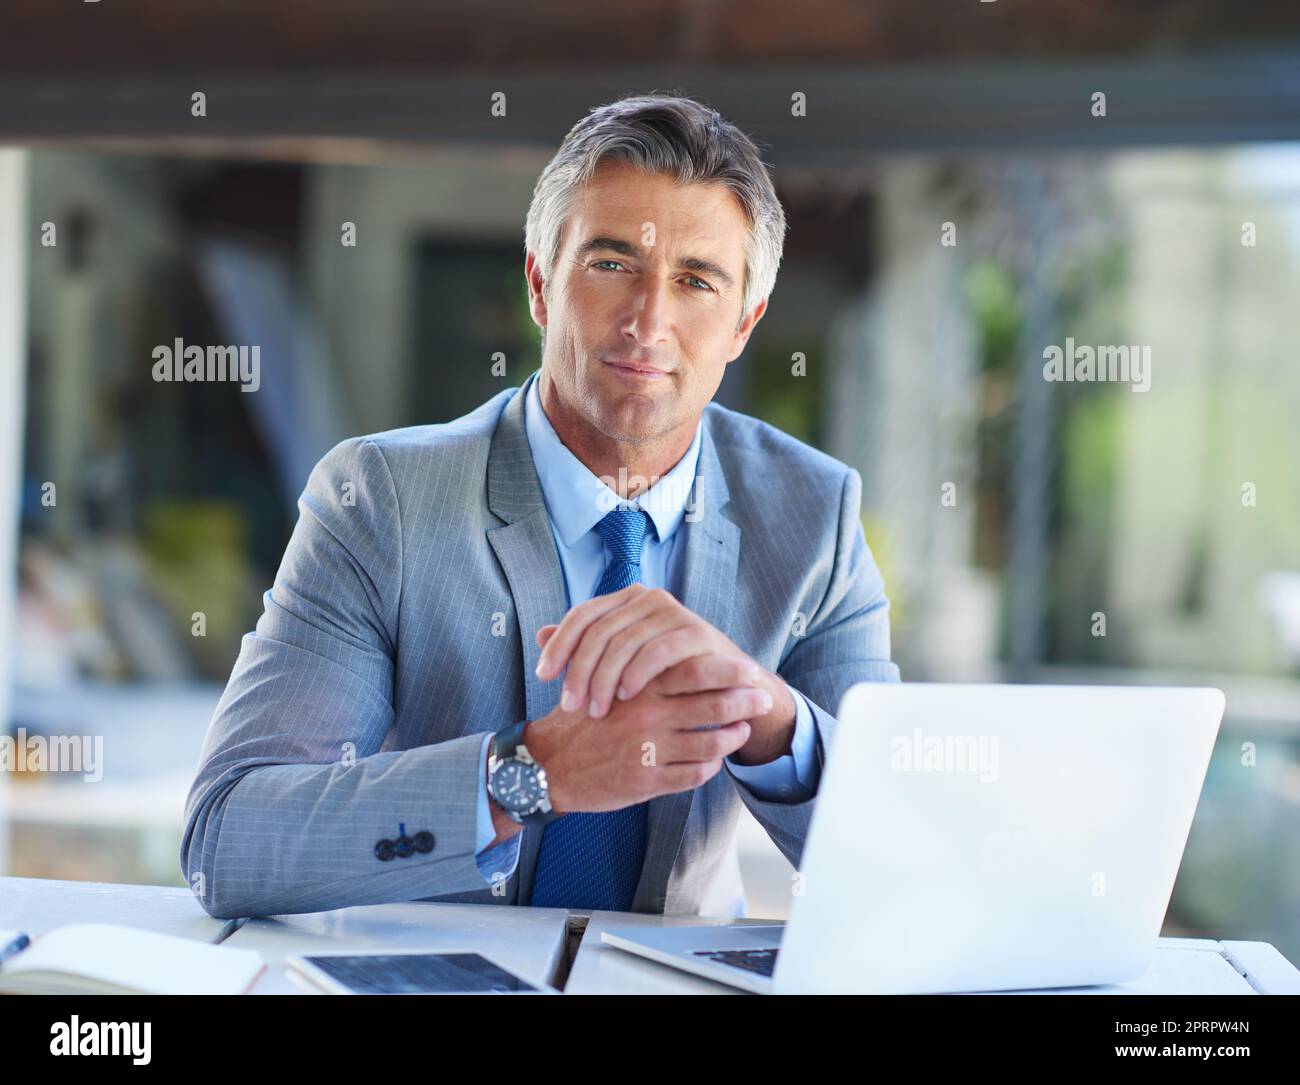 Geh raus und hol dir, was du willst. Porträt eines selbstbewussten, reifen Geschäftsmannes, der auf einem Laptop arbeitet. Stockfoto